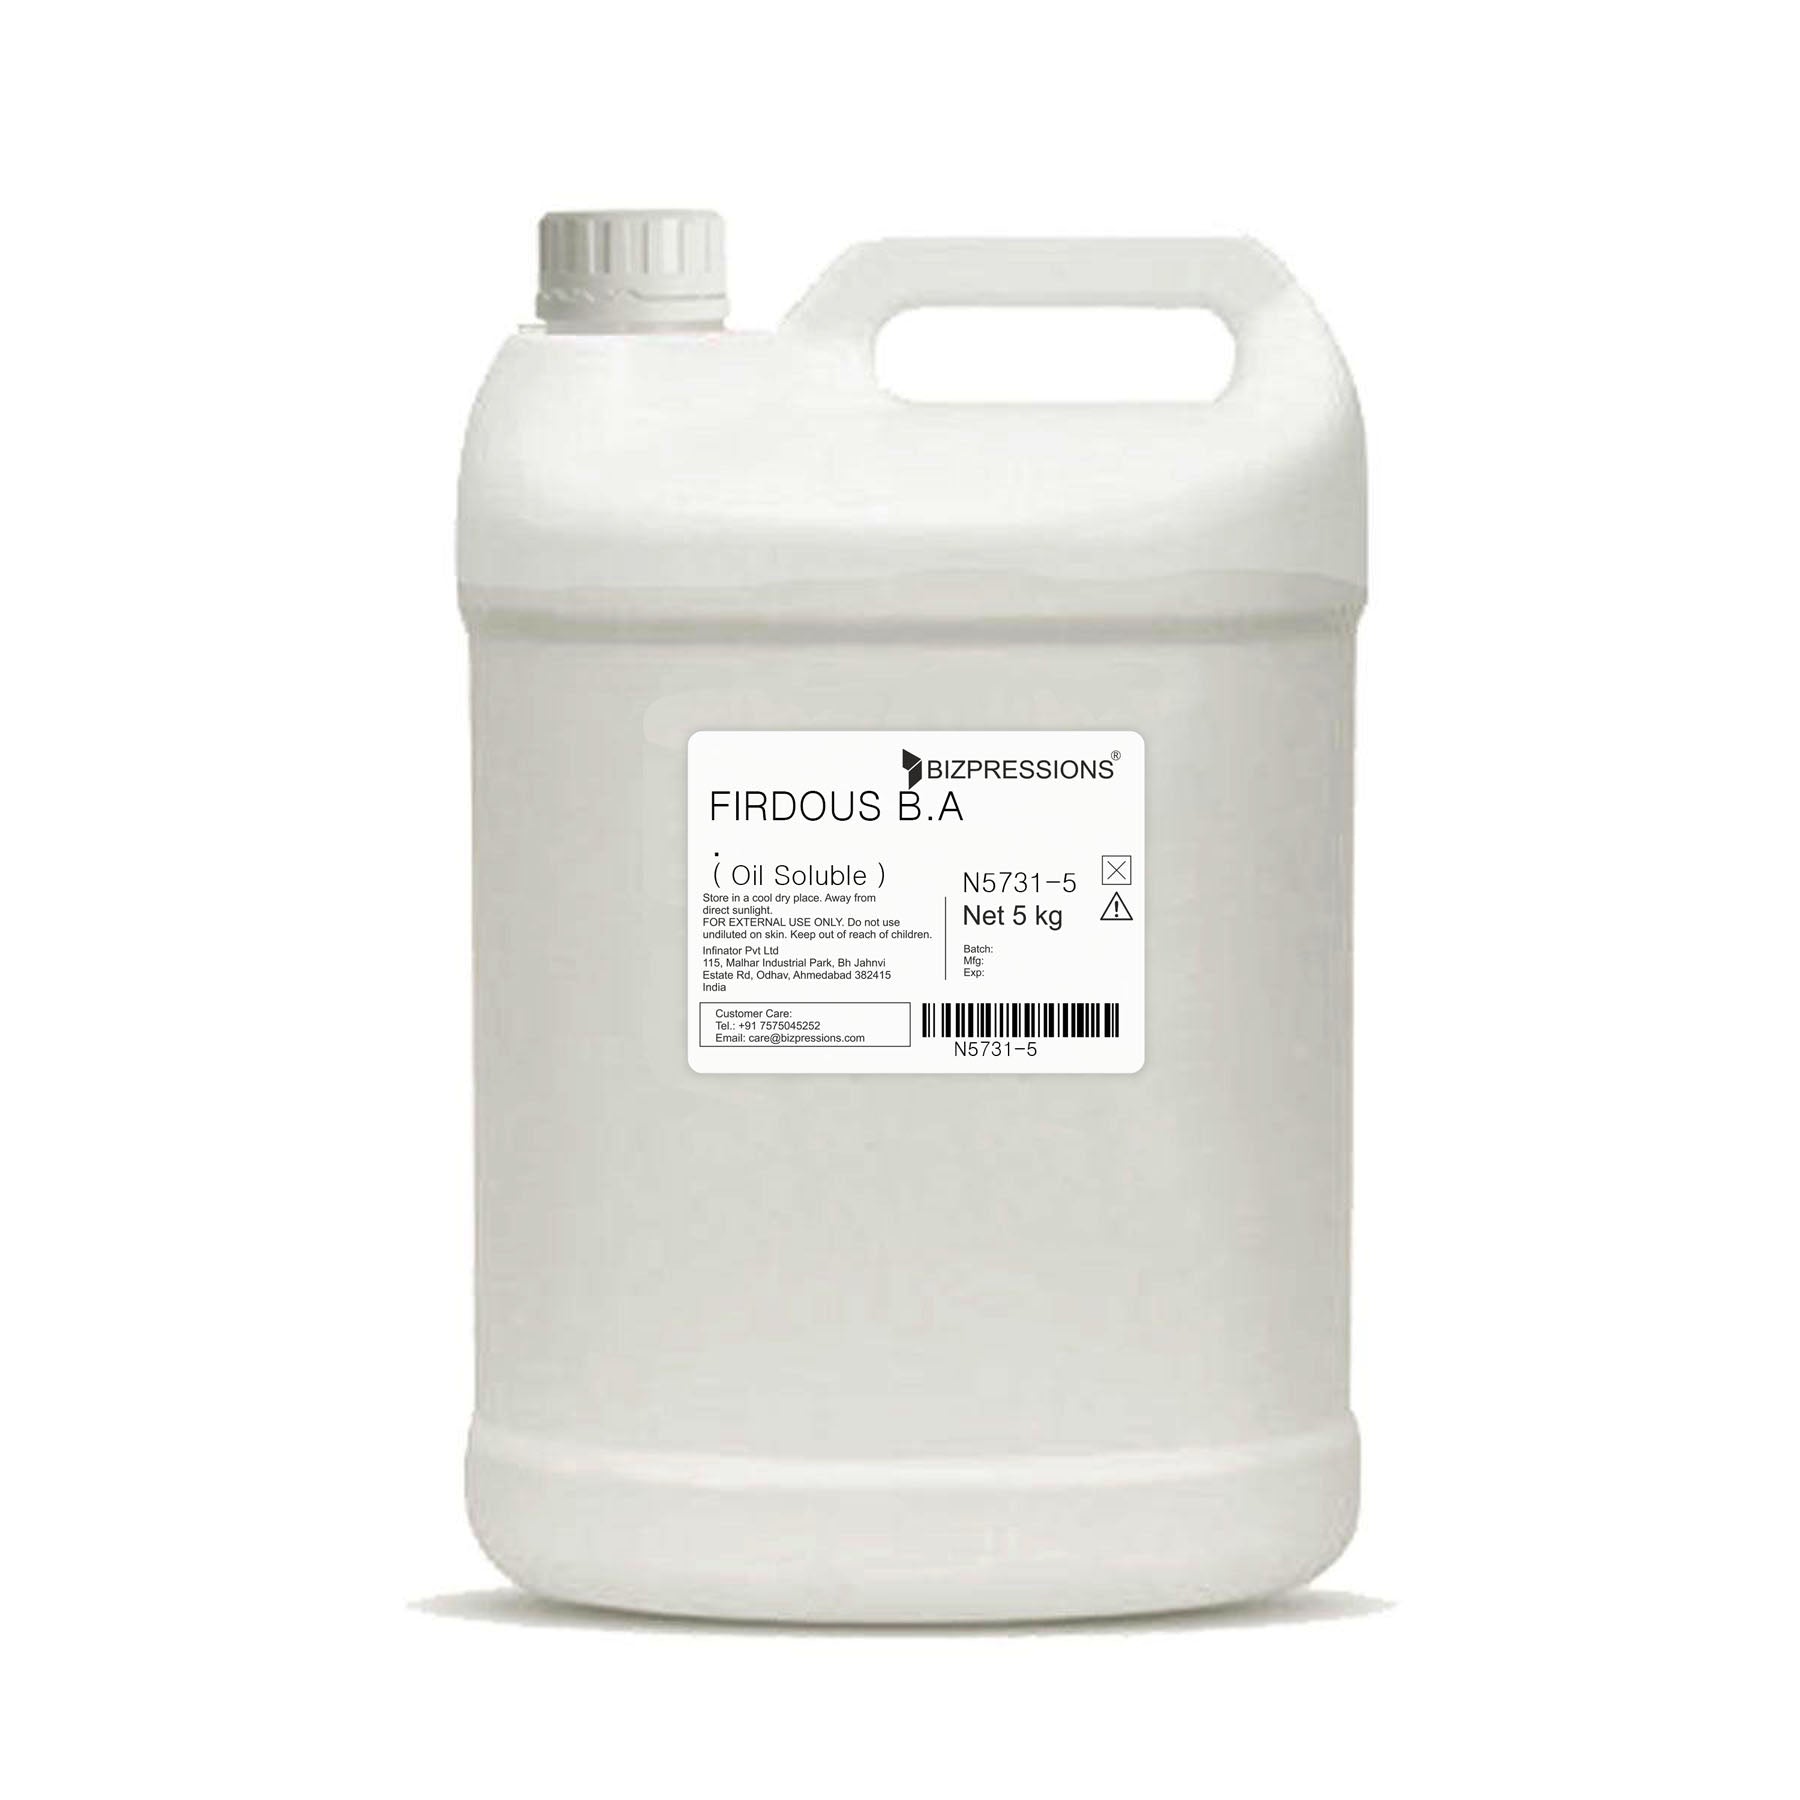 FIRDOUS B.A - Fragrance ( Oil Soluble ) - 5 kg